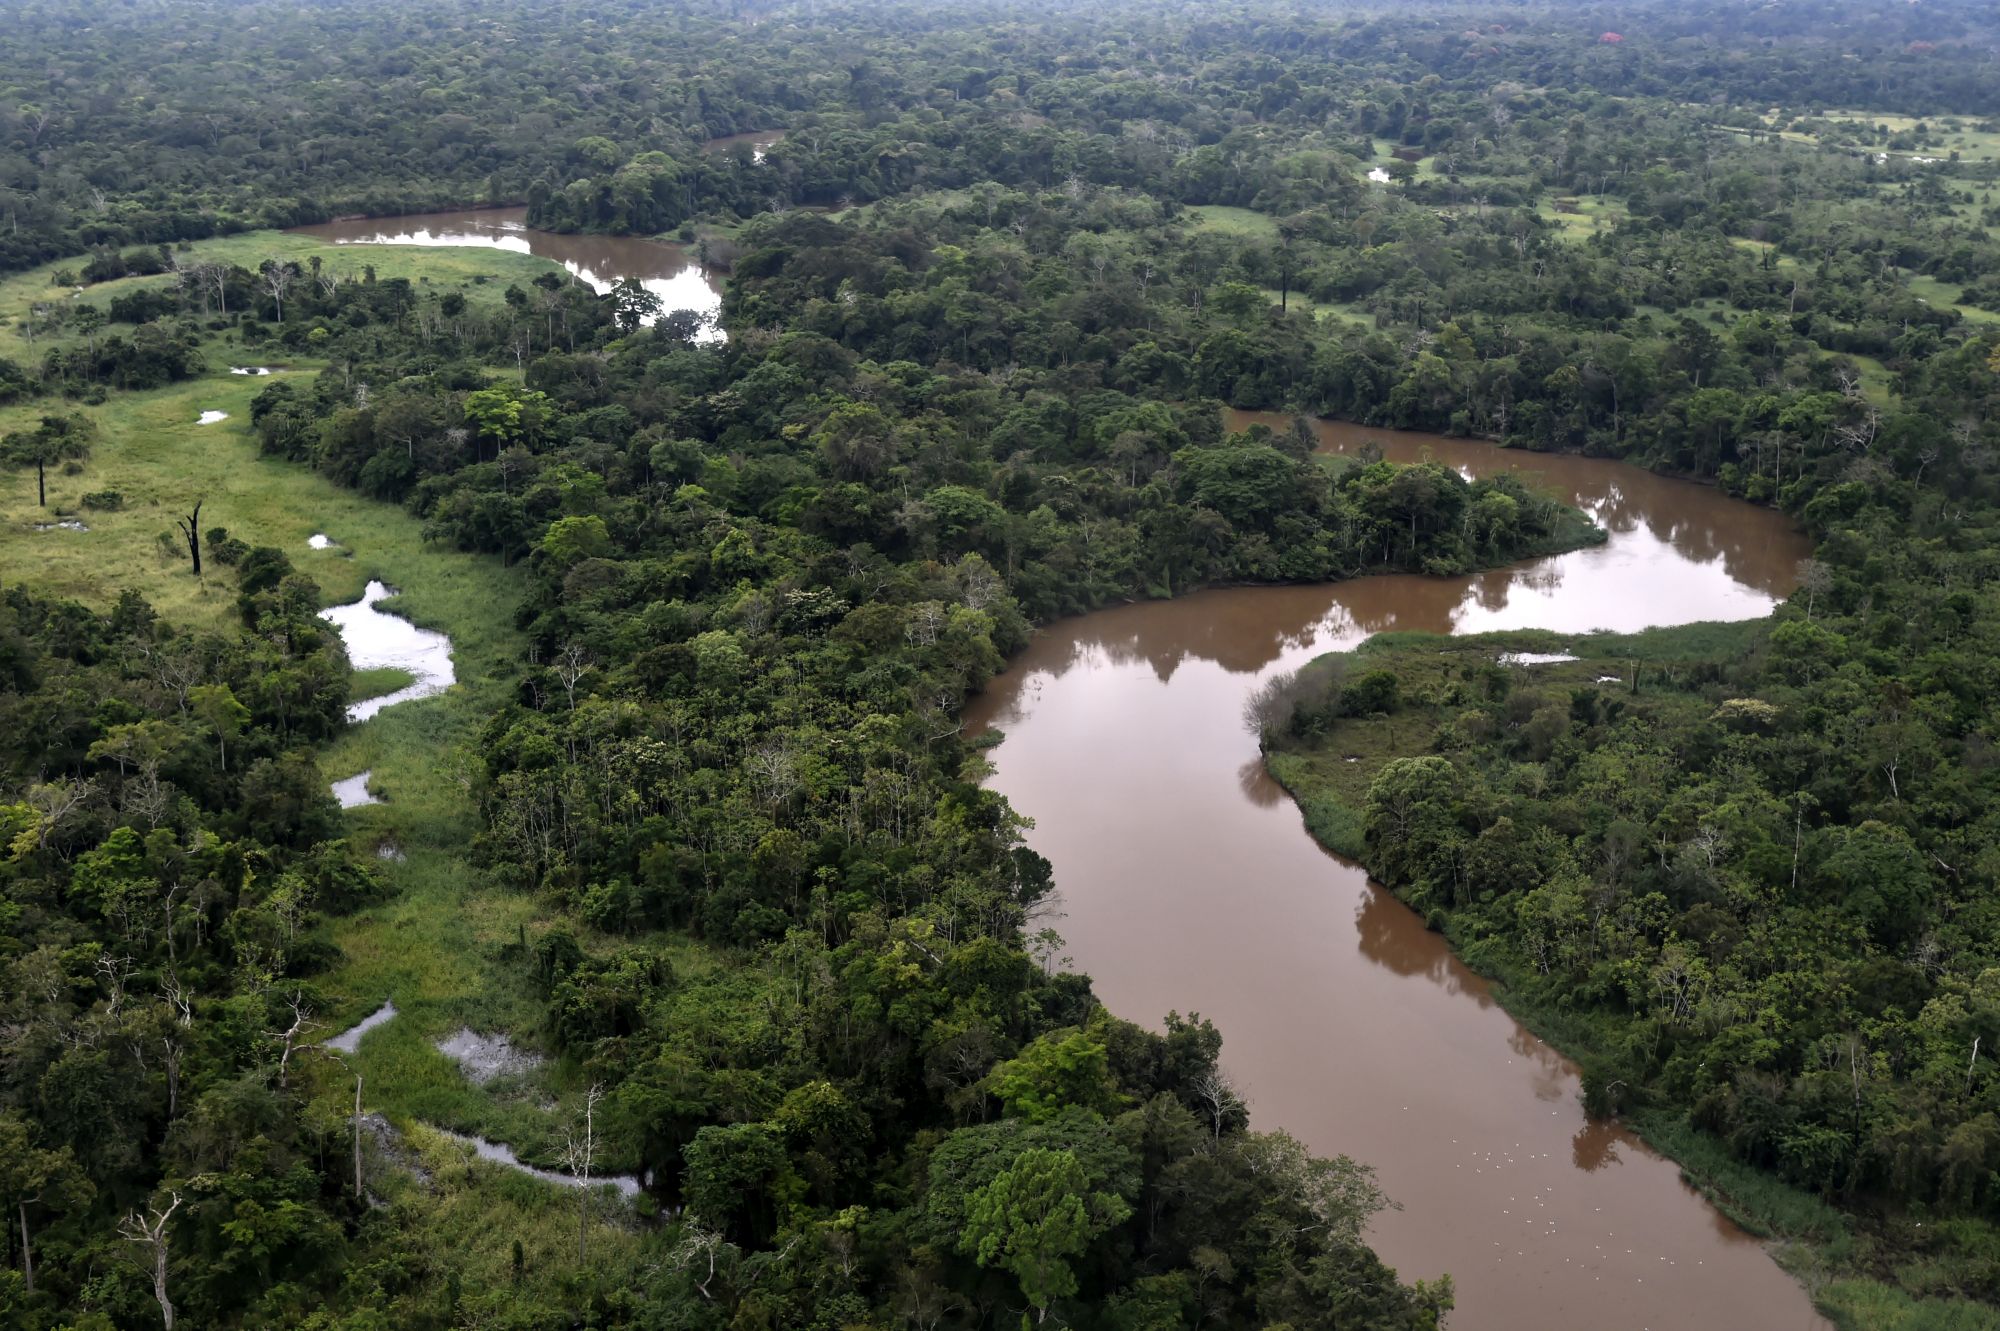 Vista panorámica de parte de la Amazonía boliviana. Foto cortesía de Los Tiempos.